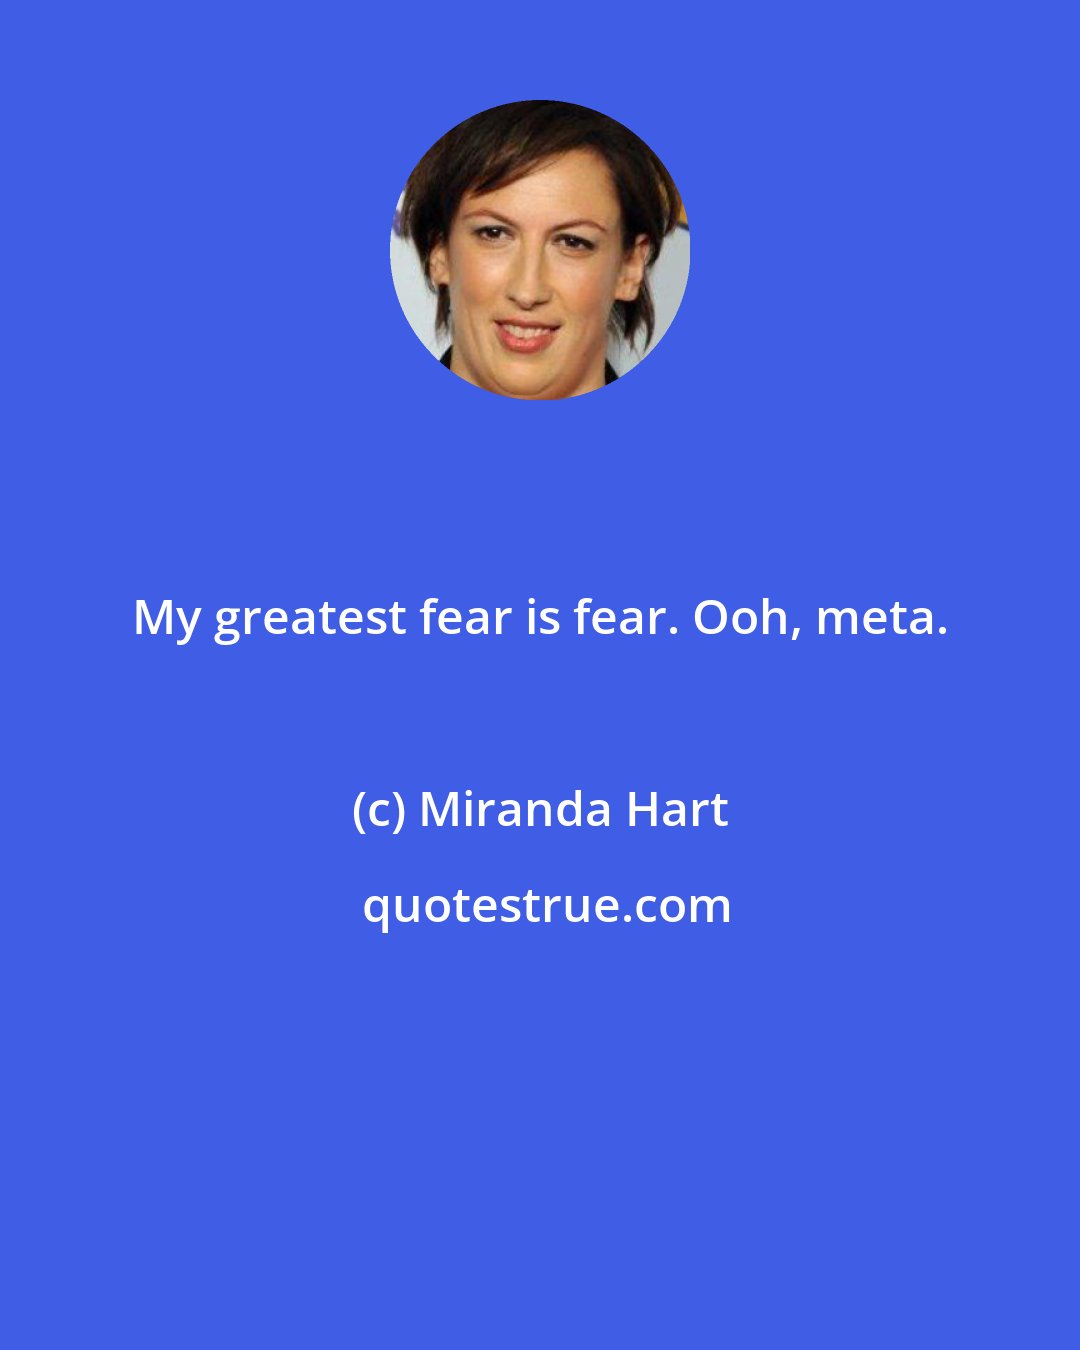 Miranda Hart: My greatest fear is fear. Ooh, meta.